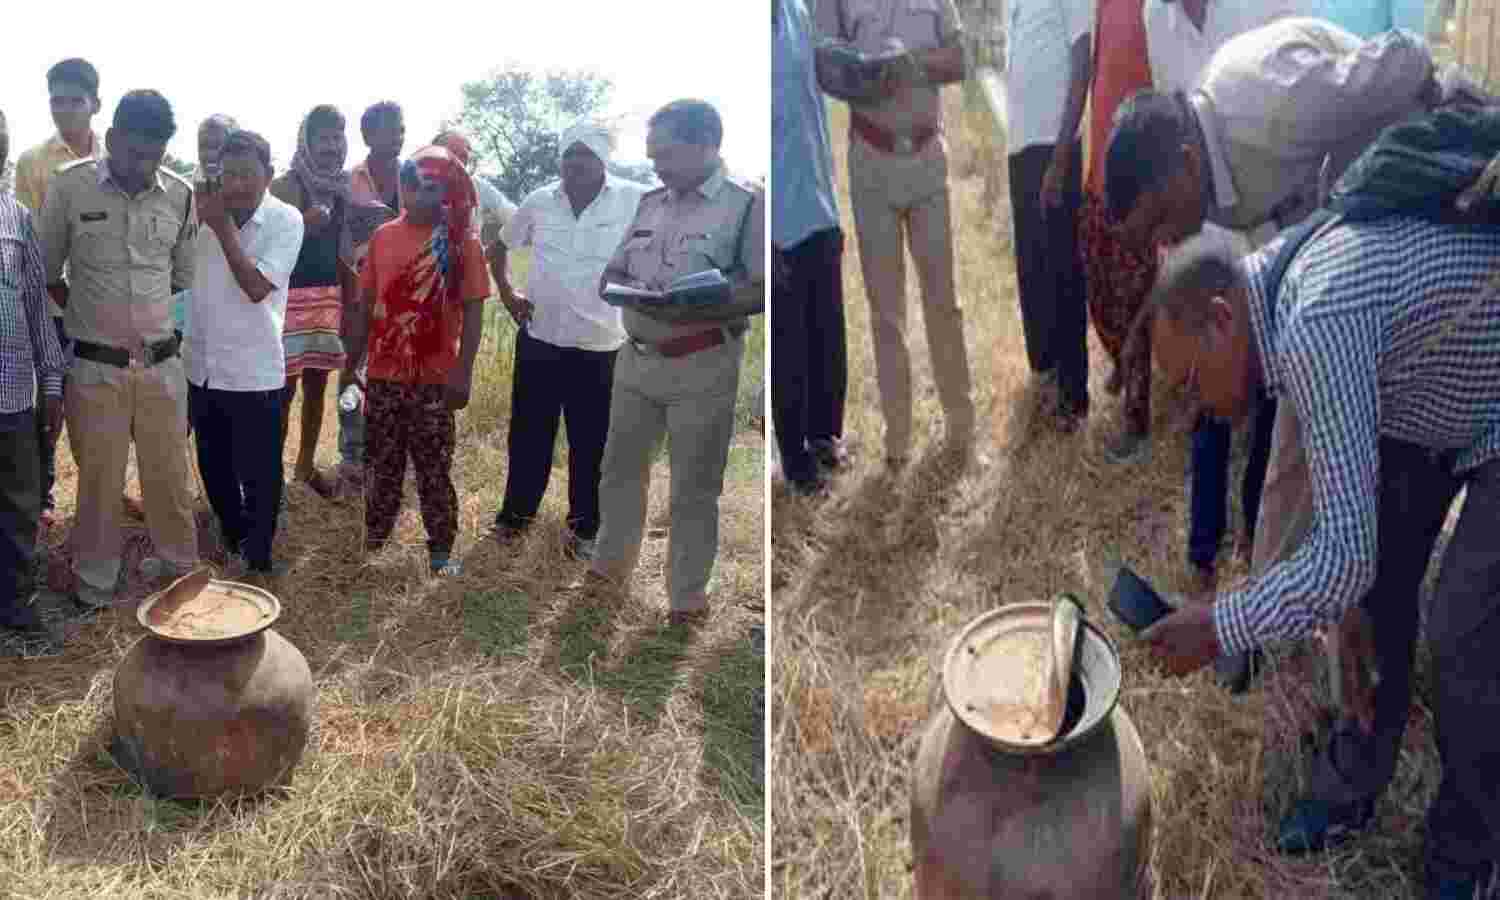 Chhattisgarh News : खेत में अचानक प्रकट हुआ पीतल का घड़ा, ग्रामीणों ने जताई तंत्र-मंत्र की आशंका, इलाके में सनसनी